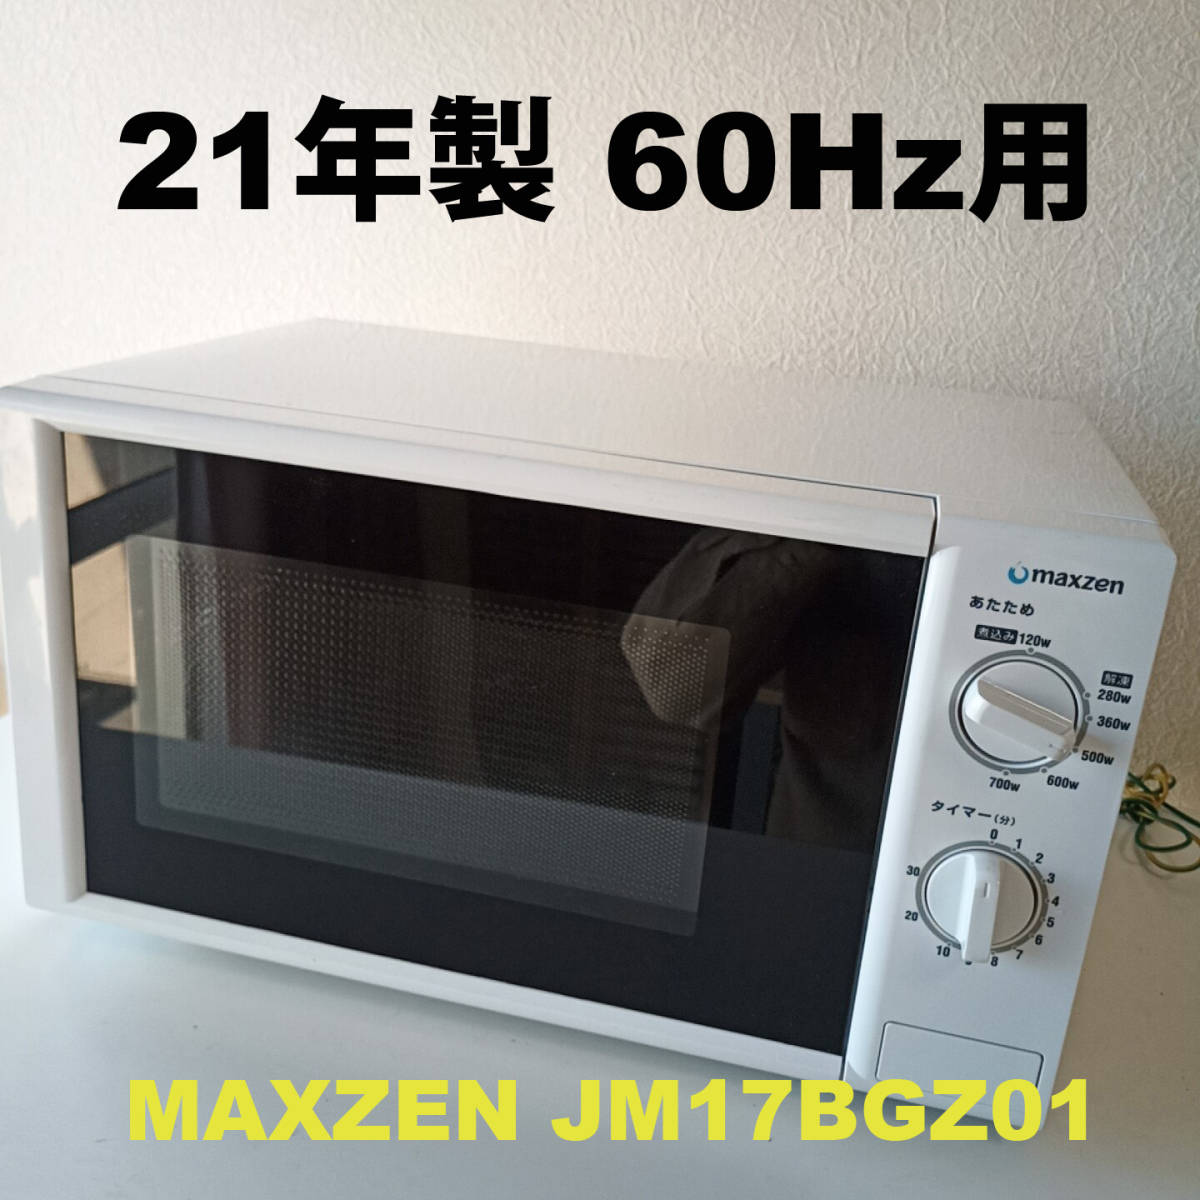 21年製 レンジ60Hz(西日本)用 MAXZEN JM17BGZ01 #1701